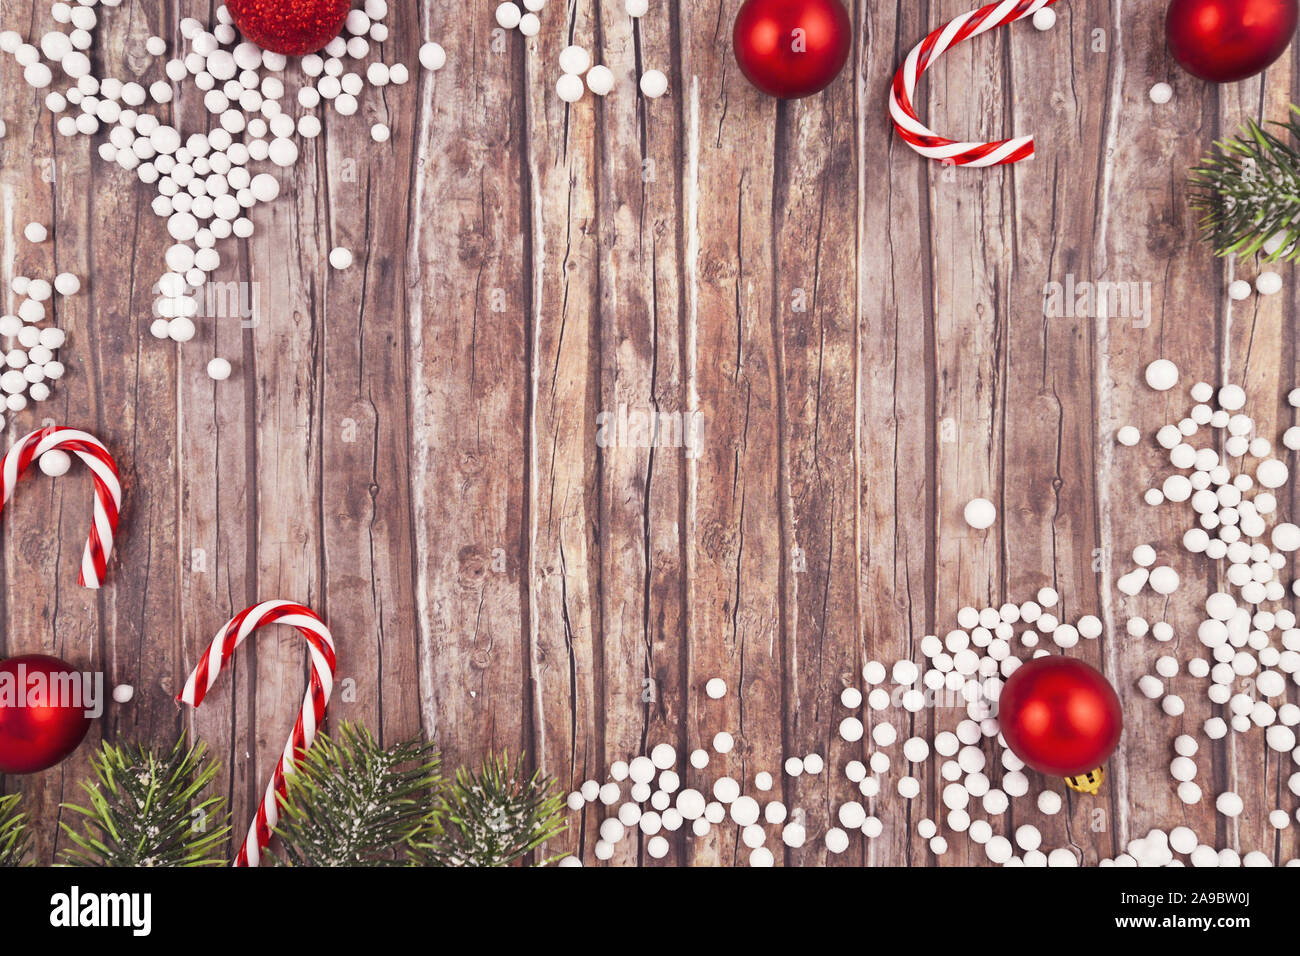 Saisonale Weihnachten flach mit traditionellen Red tree ornament Flitter, weißer Schnee Kugeln, Zuckerstangen und Tannenzweigen auf leere Holz- Kopie Raum zurück Stockfoto